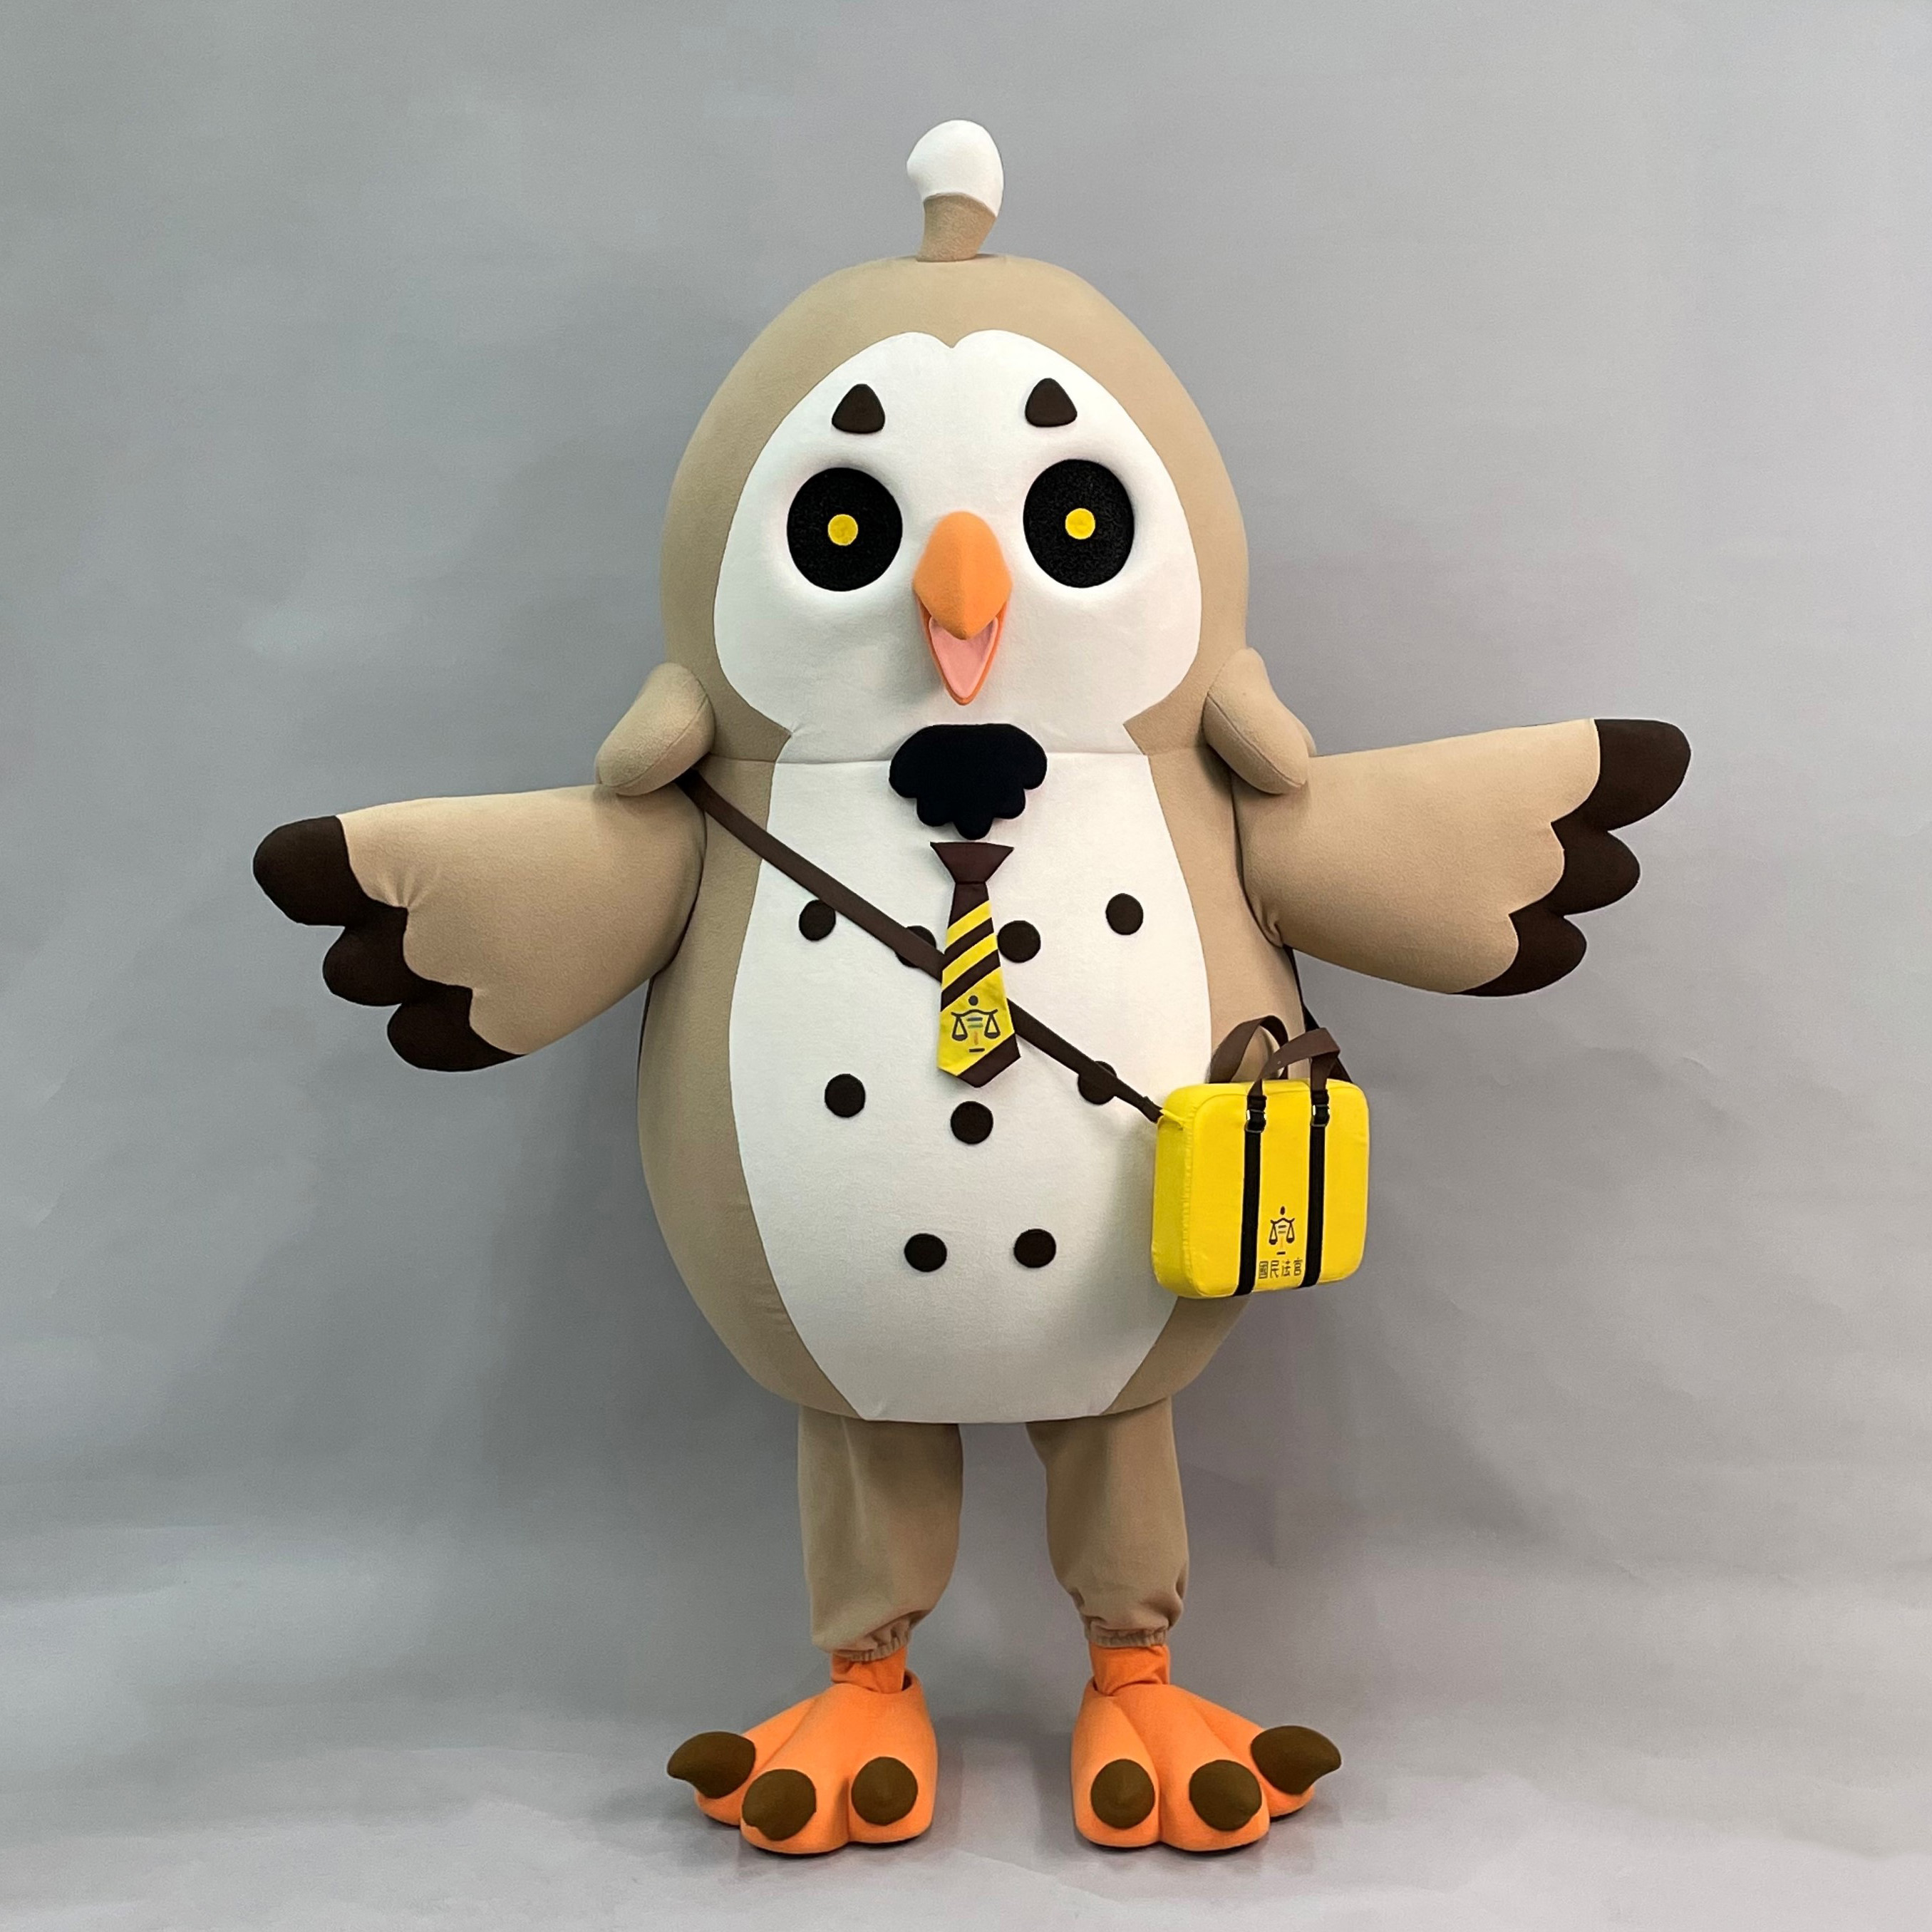 魔人社2021司法院吉祥物草鴞人偶製作 Grass owl costume